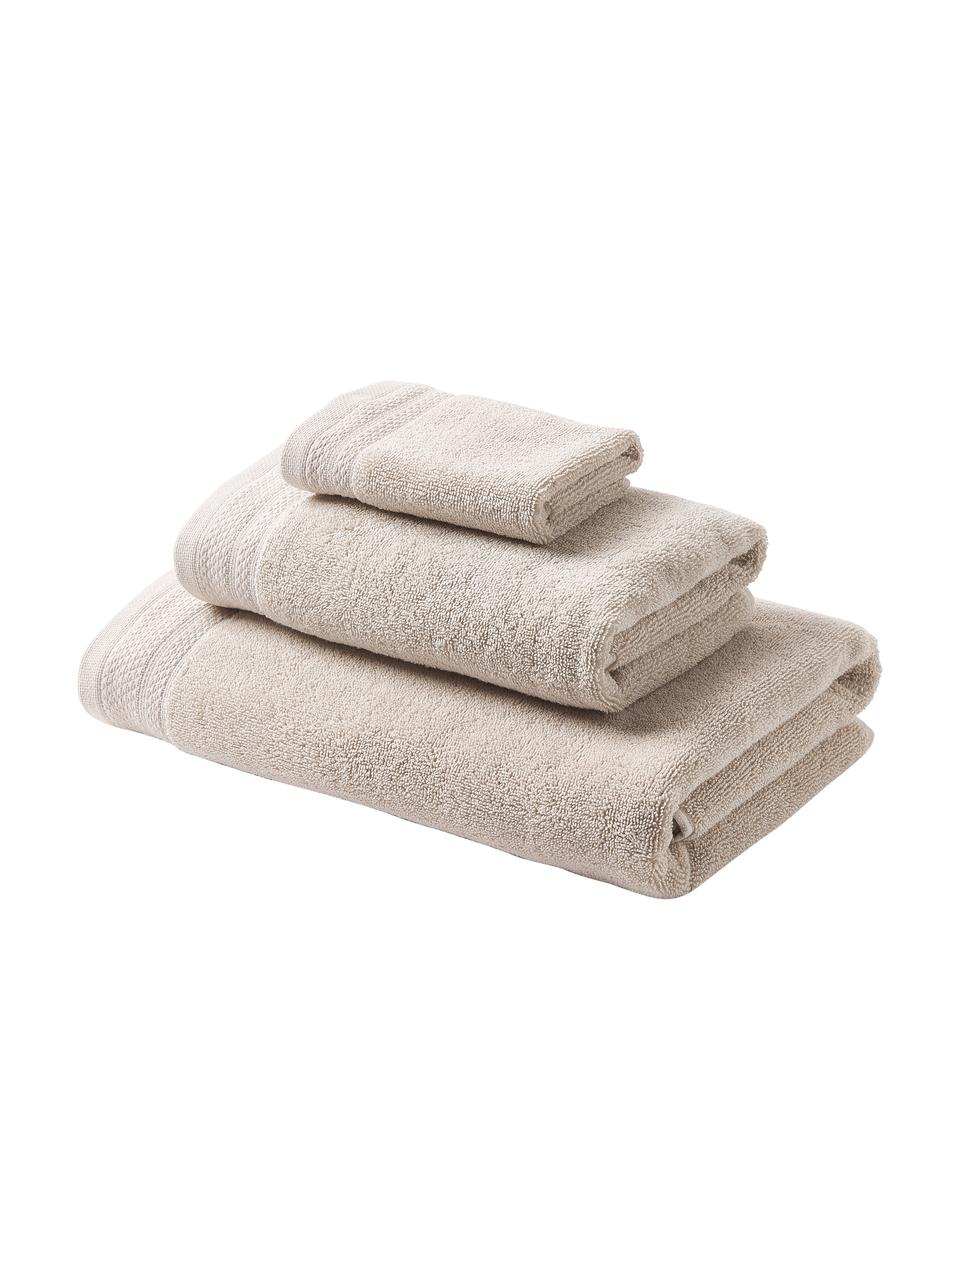 Súprava uterákov z organickej bavlny Premium, 3 diely, Svetlobéžová, Súprava s rôznymi veľkosťami